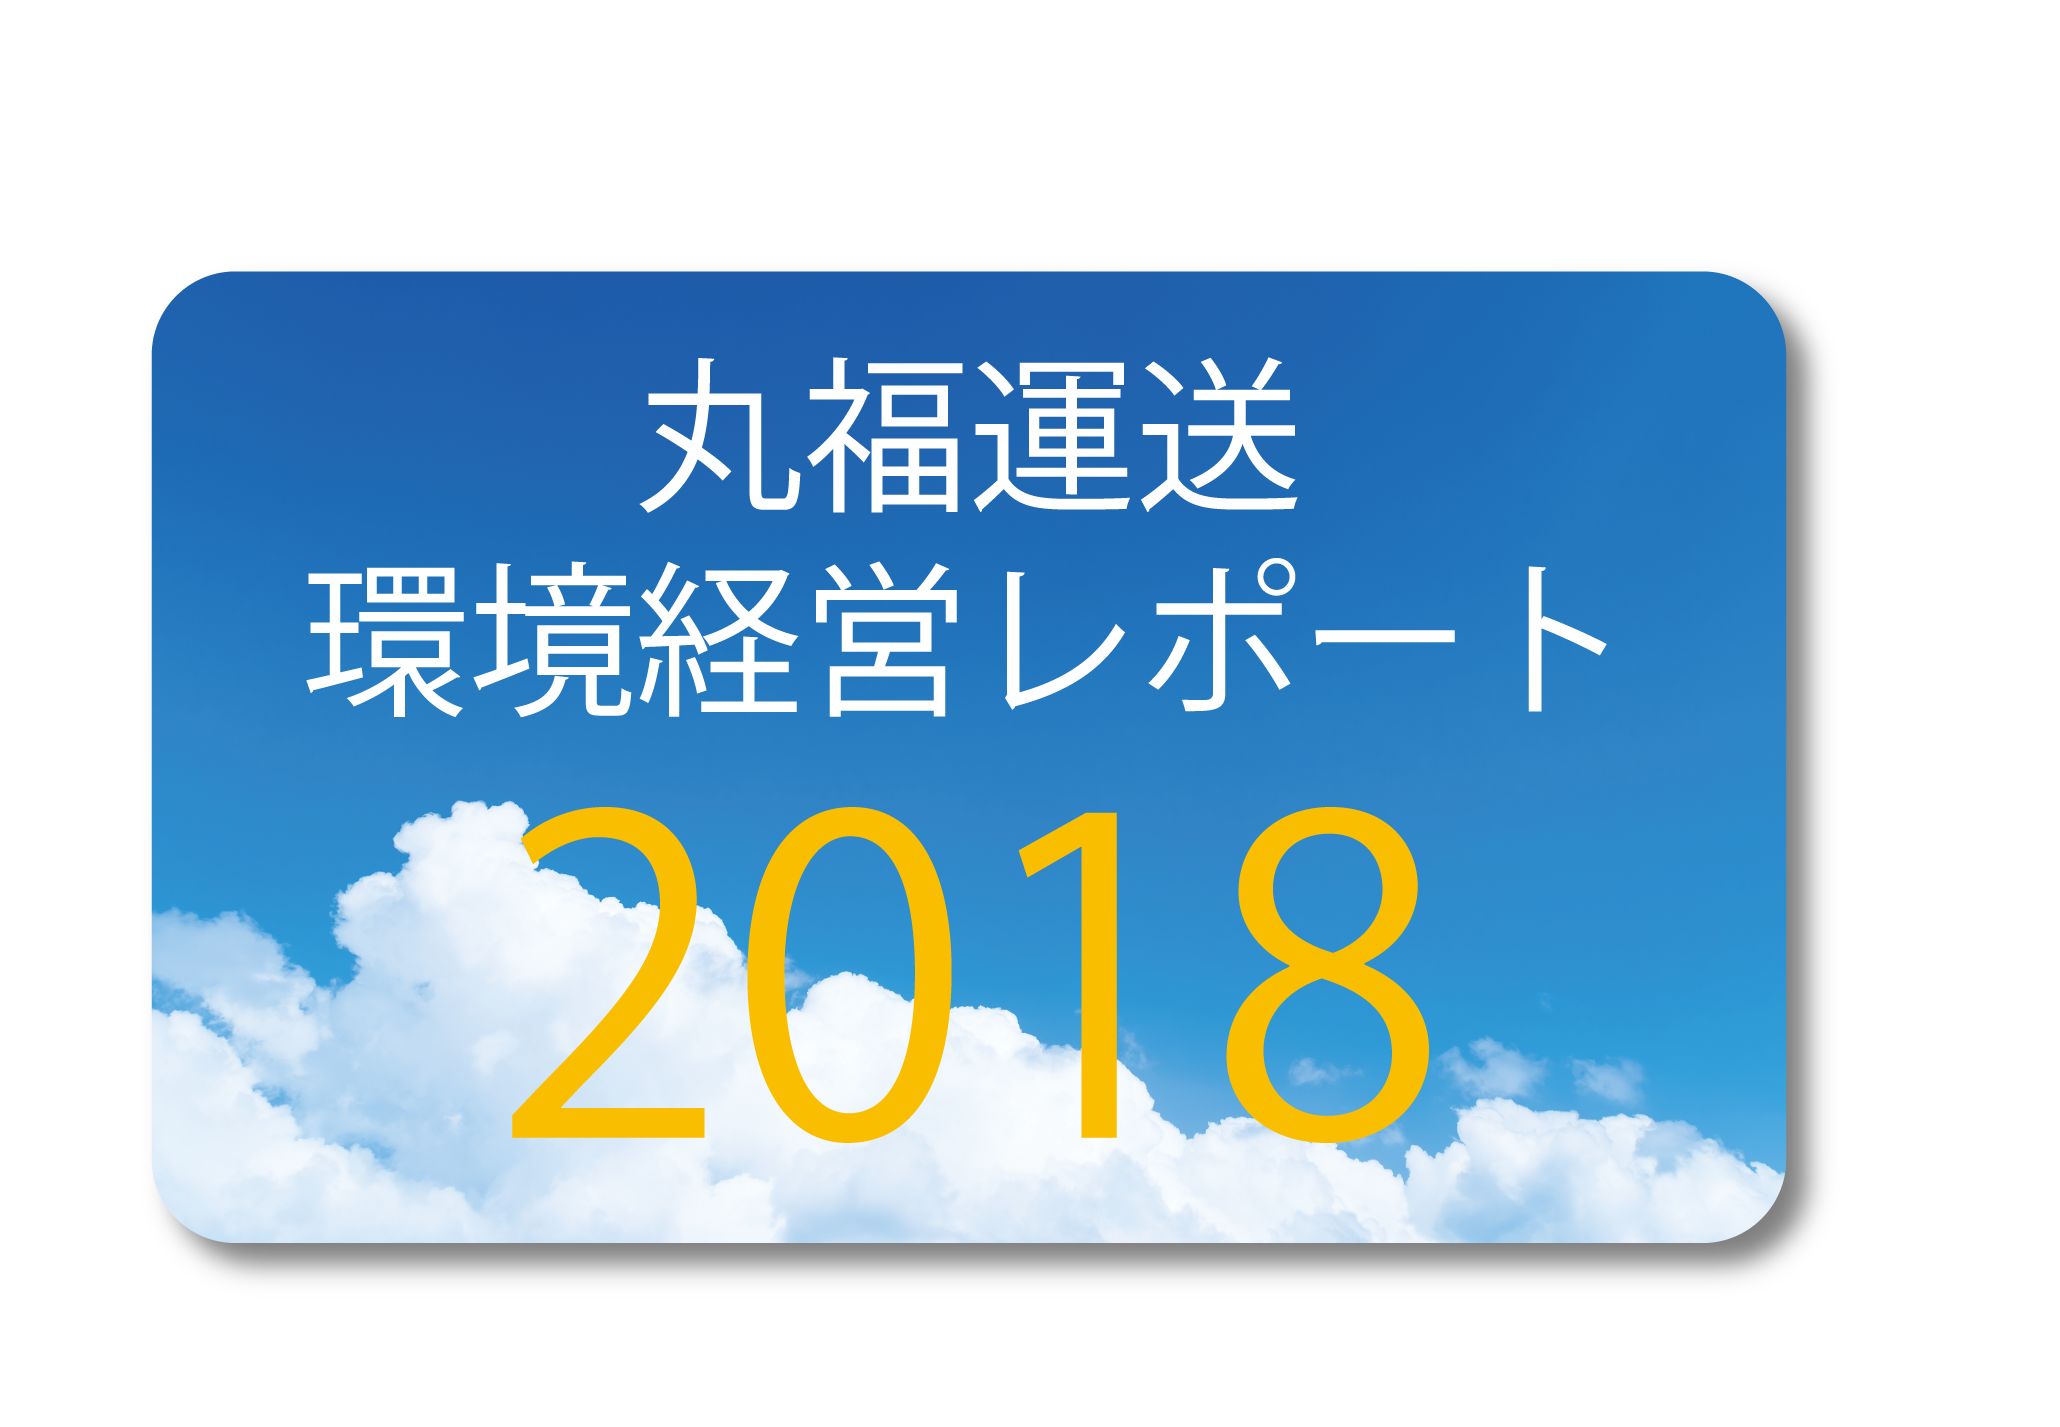 丸福運送環境経営レポート2018